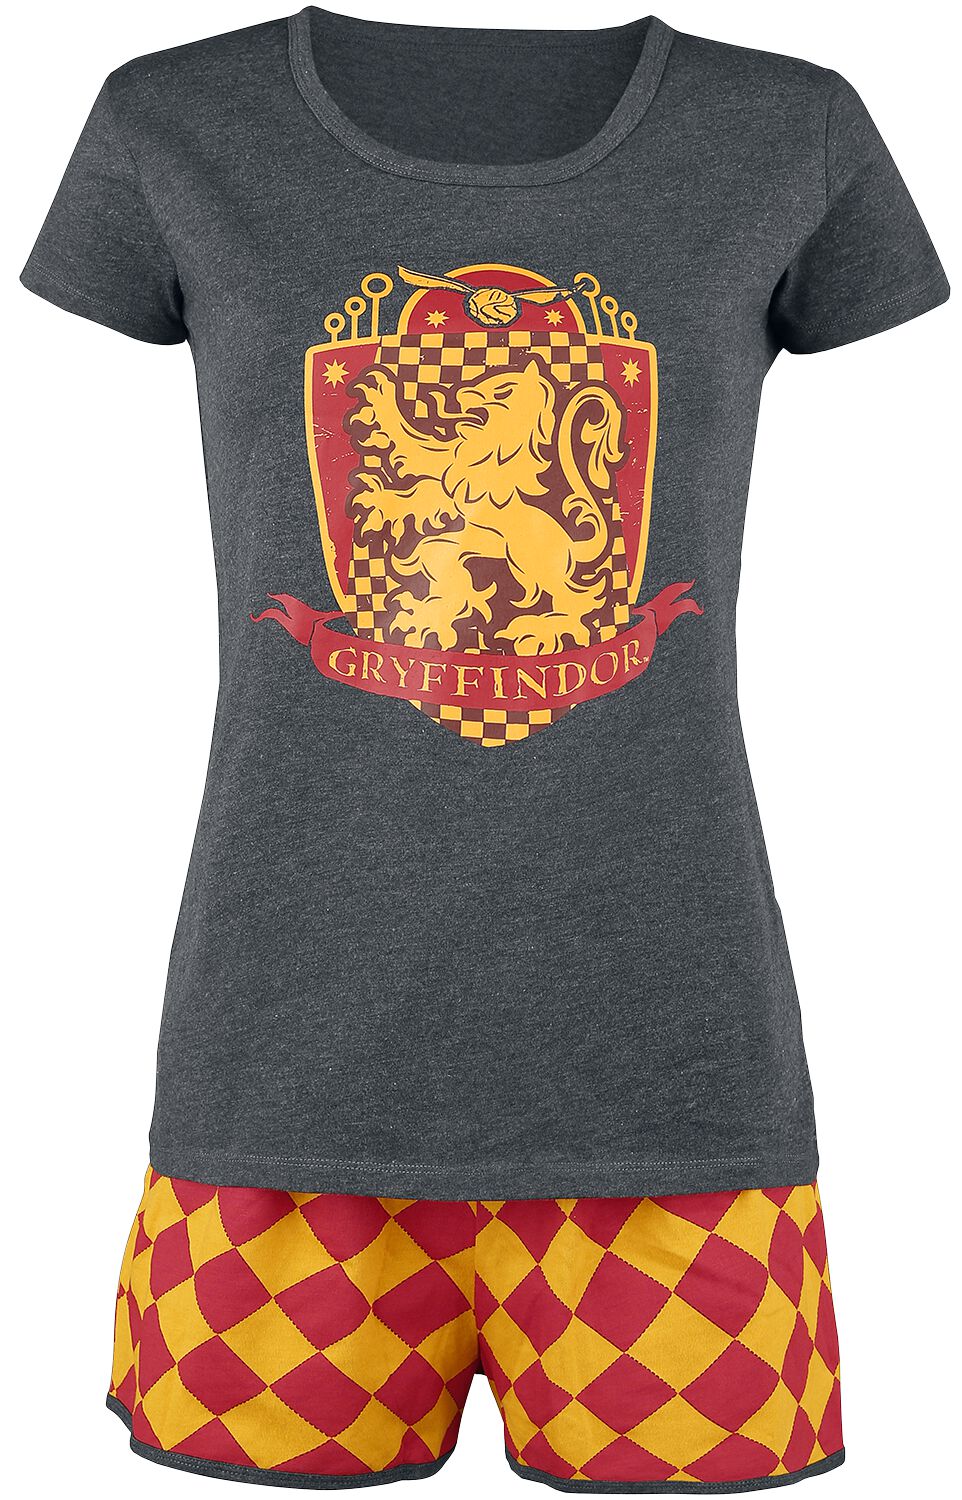 Harry Potter Schlafanzug - Gryffindor Quidditch - XS bis 5XL - für Damen - Größe M - grau/rot/gelb  - EMP exklusives Merchandise!